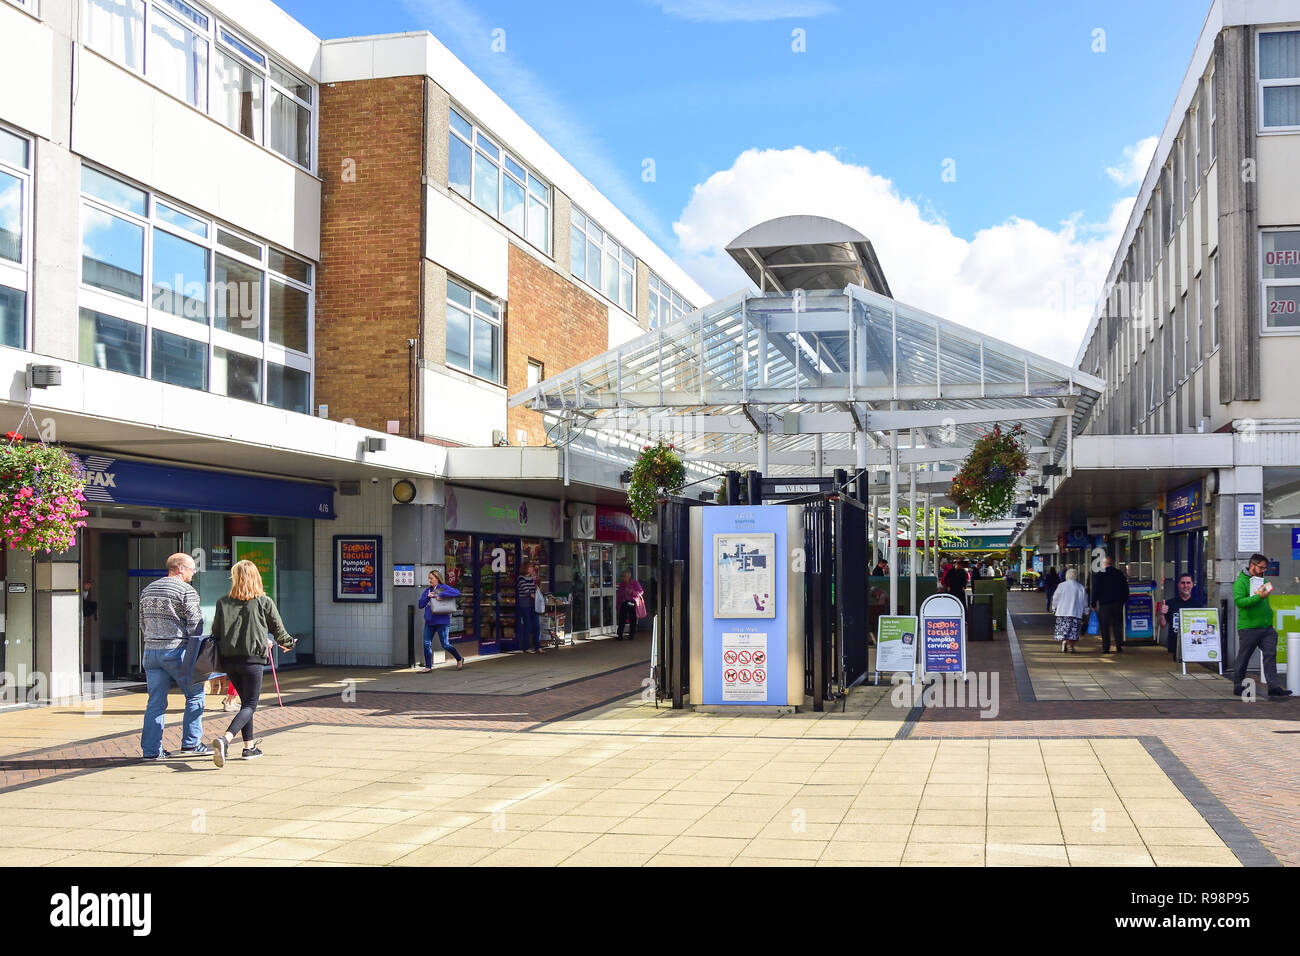 West Walk, Yate Shopping Centre, Kennedy Way, Yate, Gloucestershire, England, United Kingdom Stock Photo